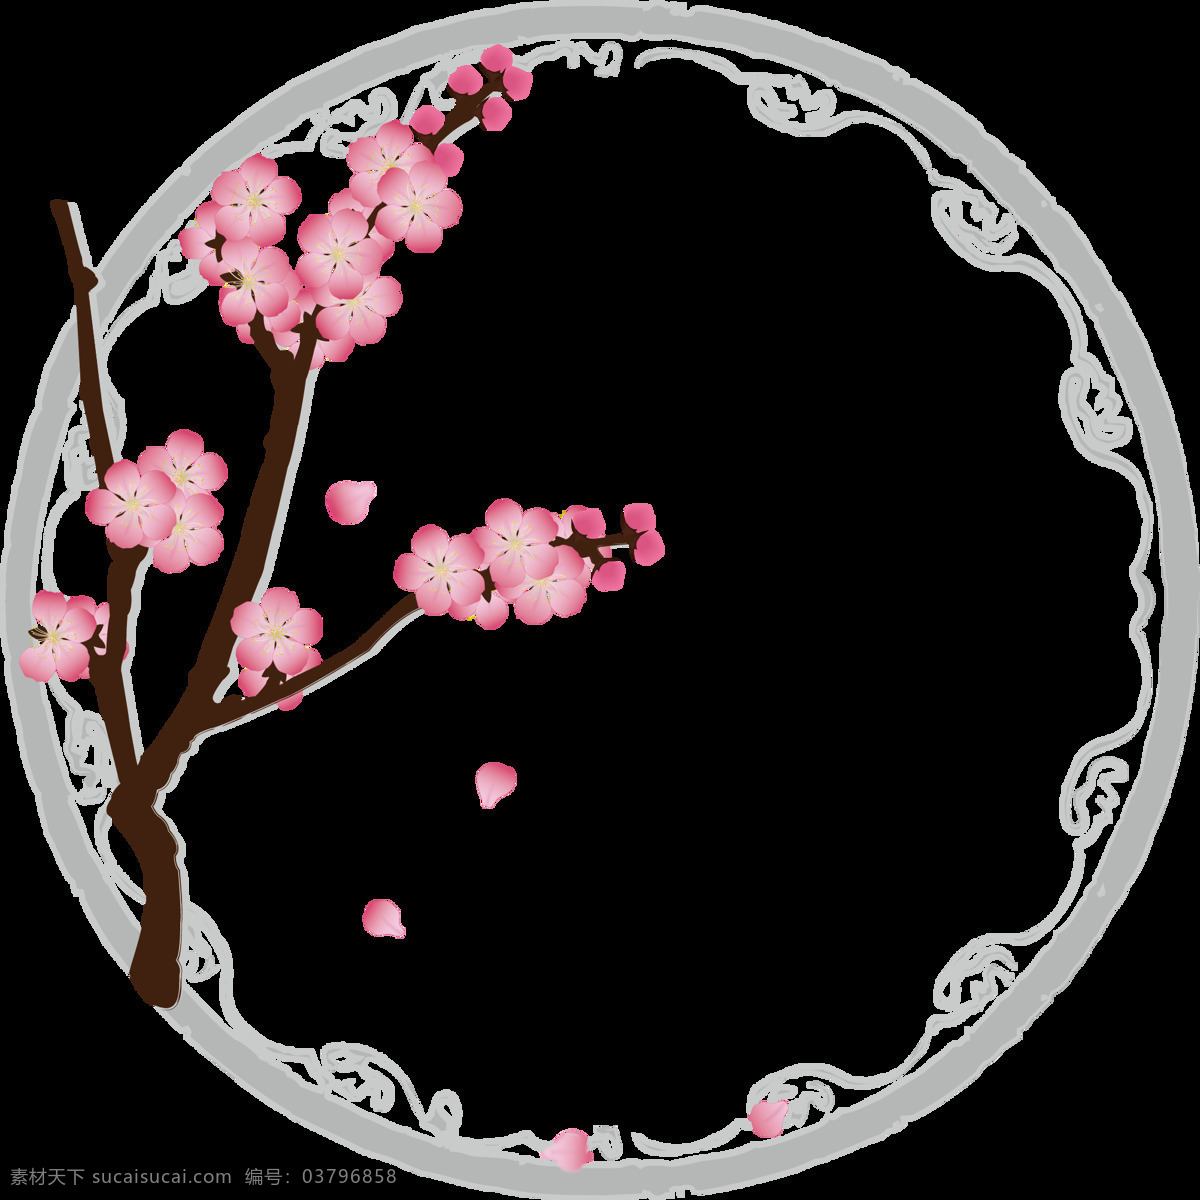 手绘 花卉 花朵 花瓣 植物 水墨 桃花 圆环 装饰 元素 水墨圆环 装饰图案